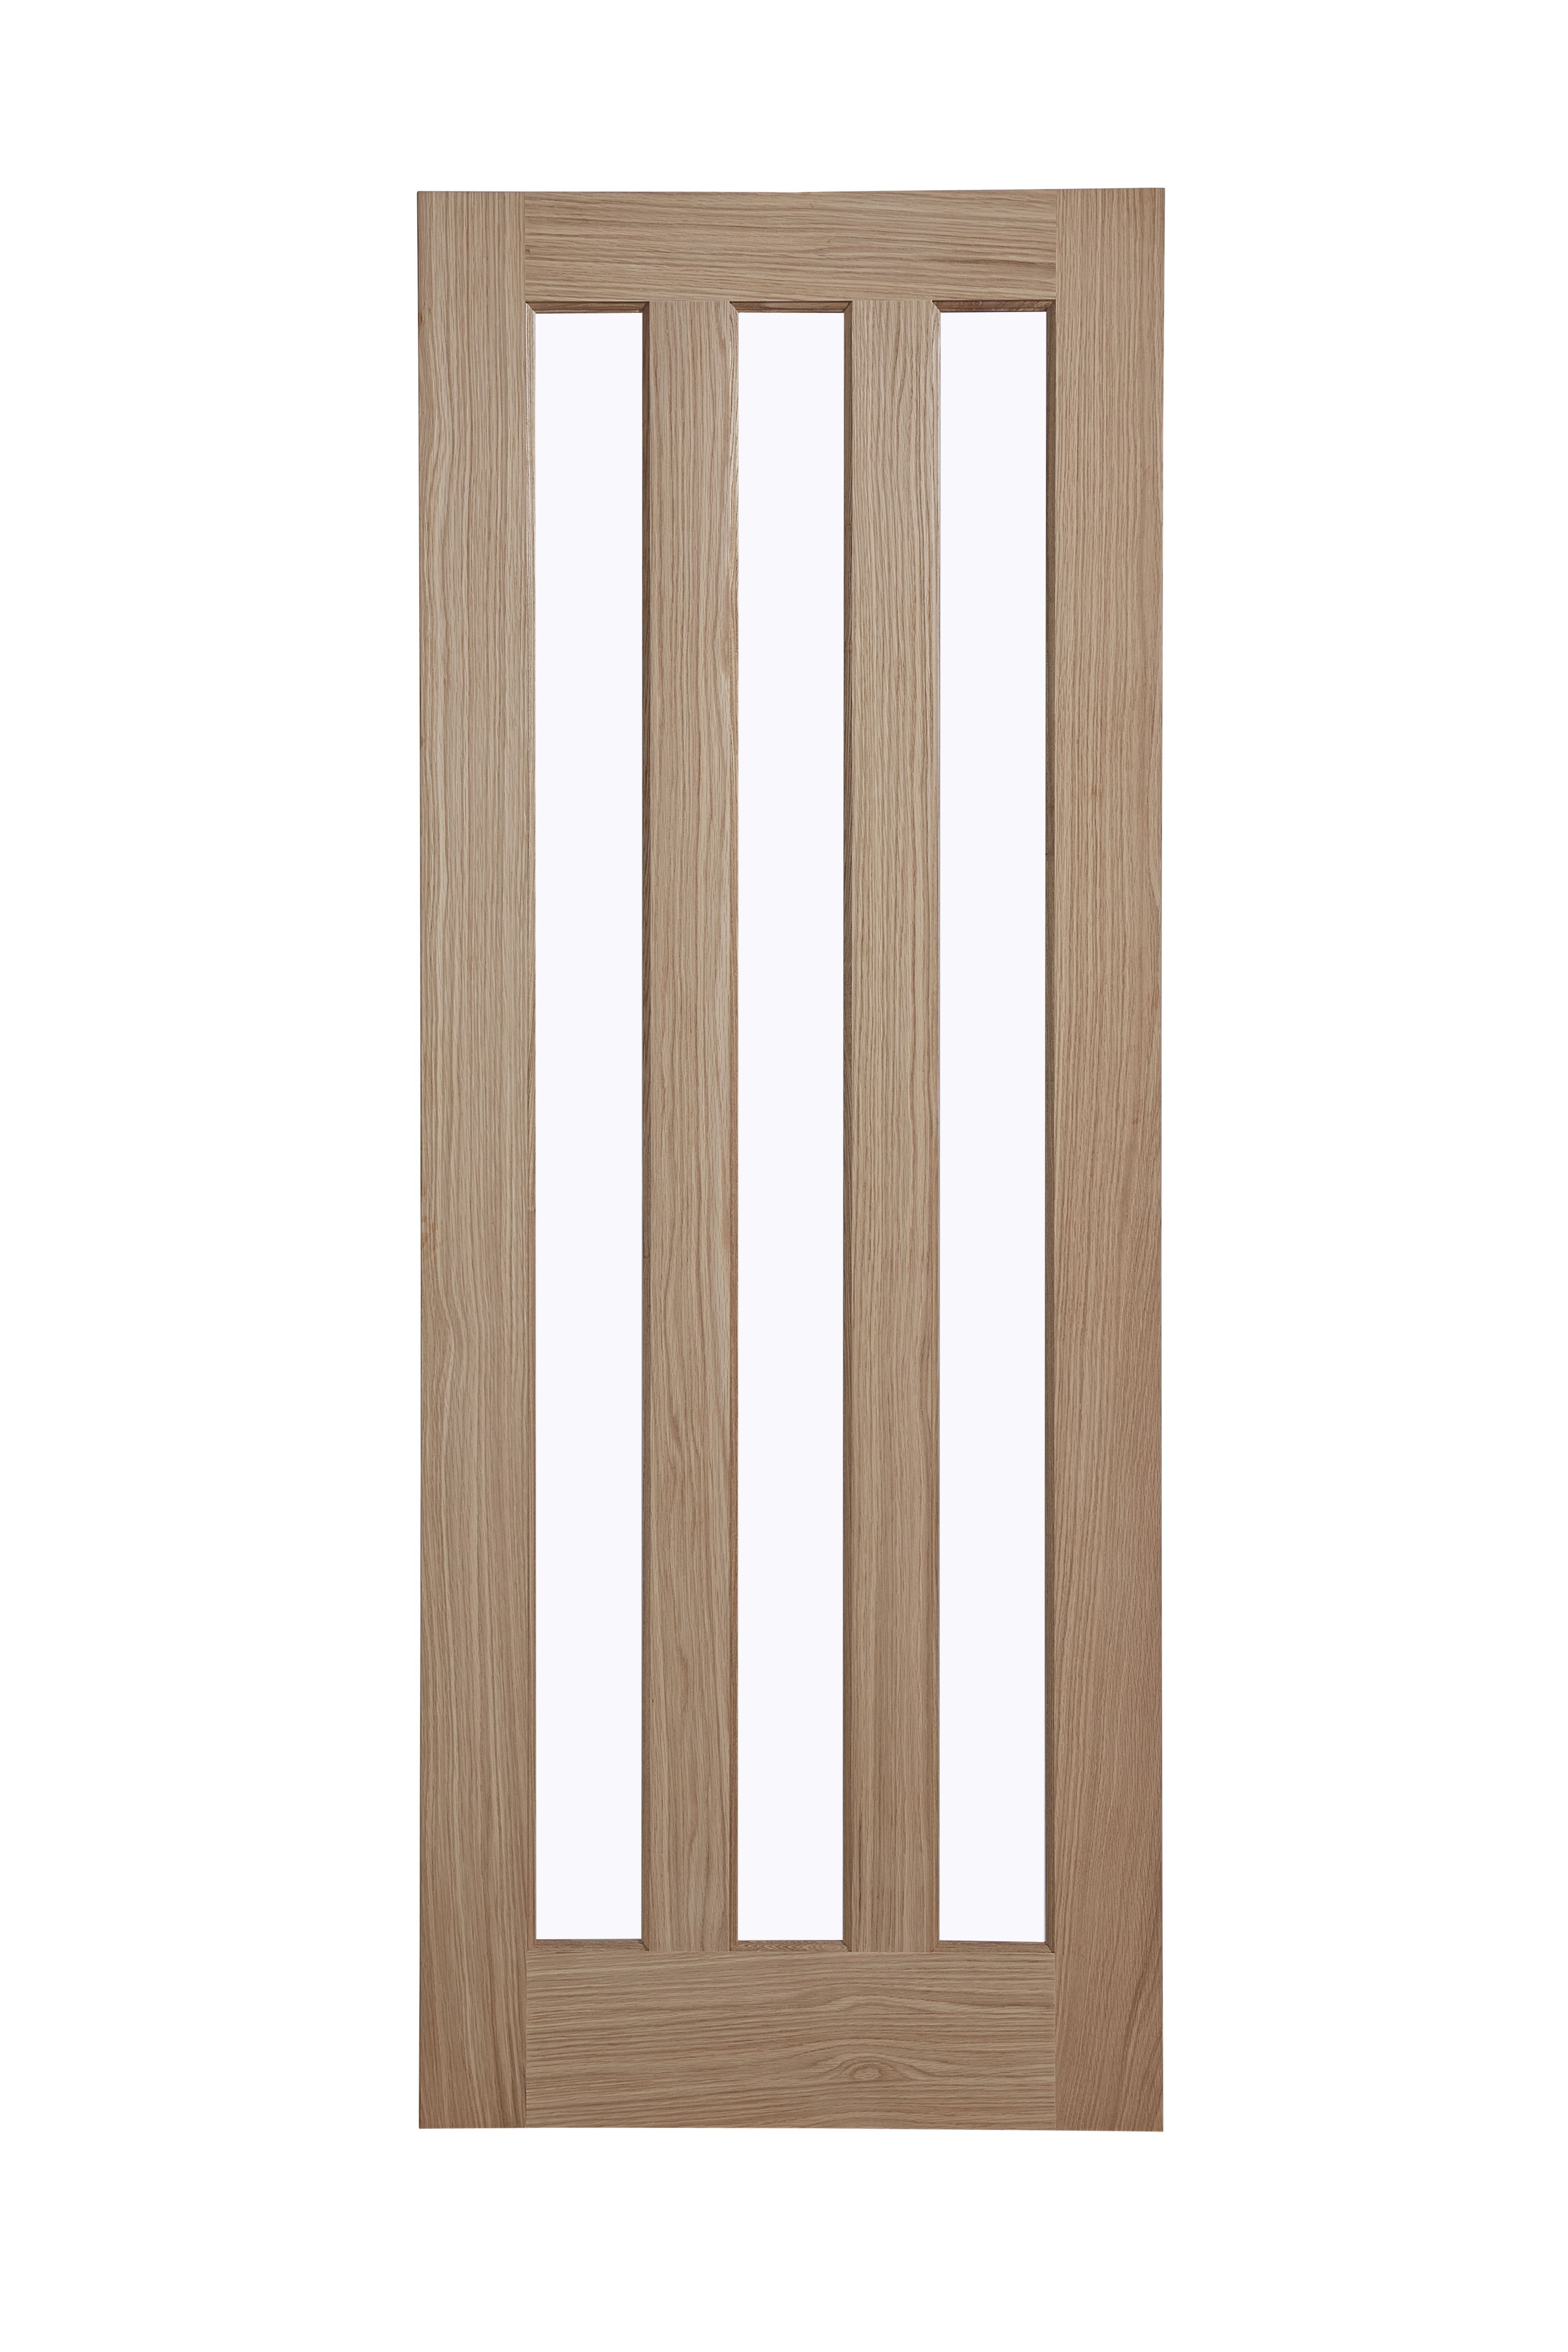 Vertical 3 panel Glazed Oak veneer Internal Door, (H)1981mm (W)838mm (T)35mm